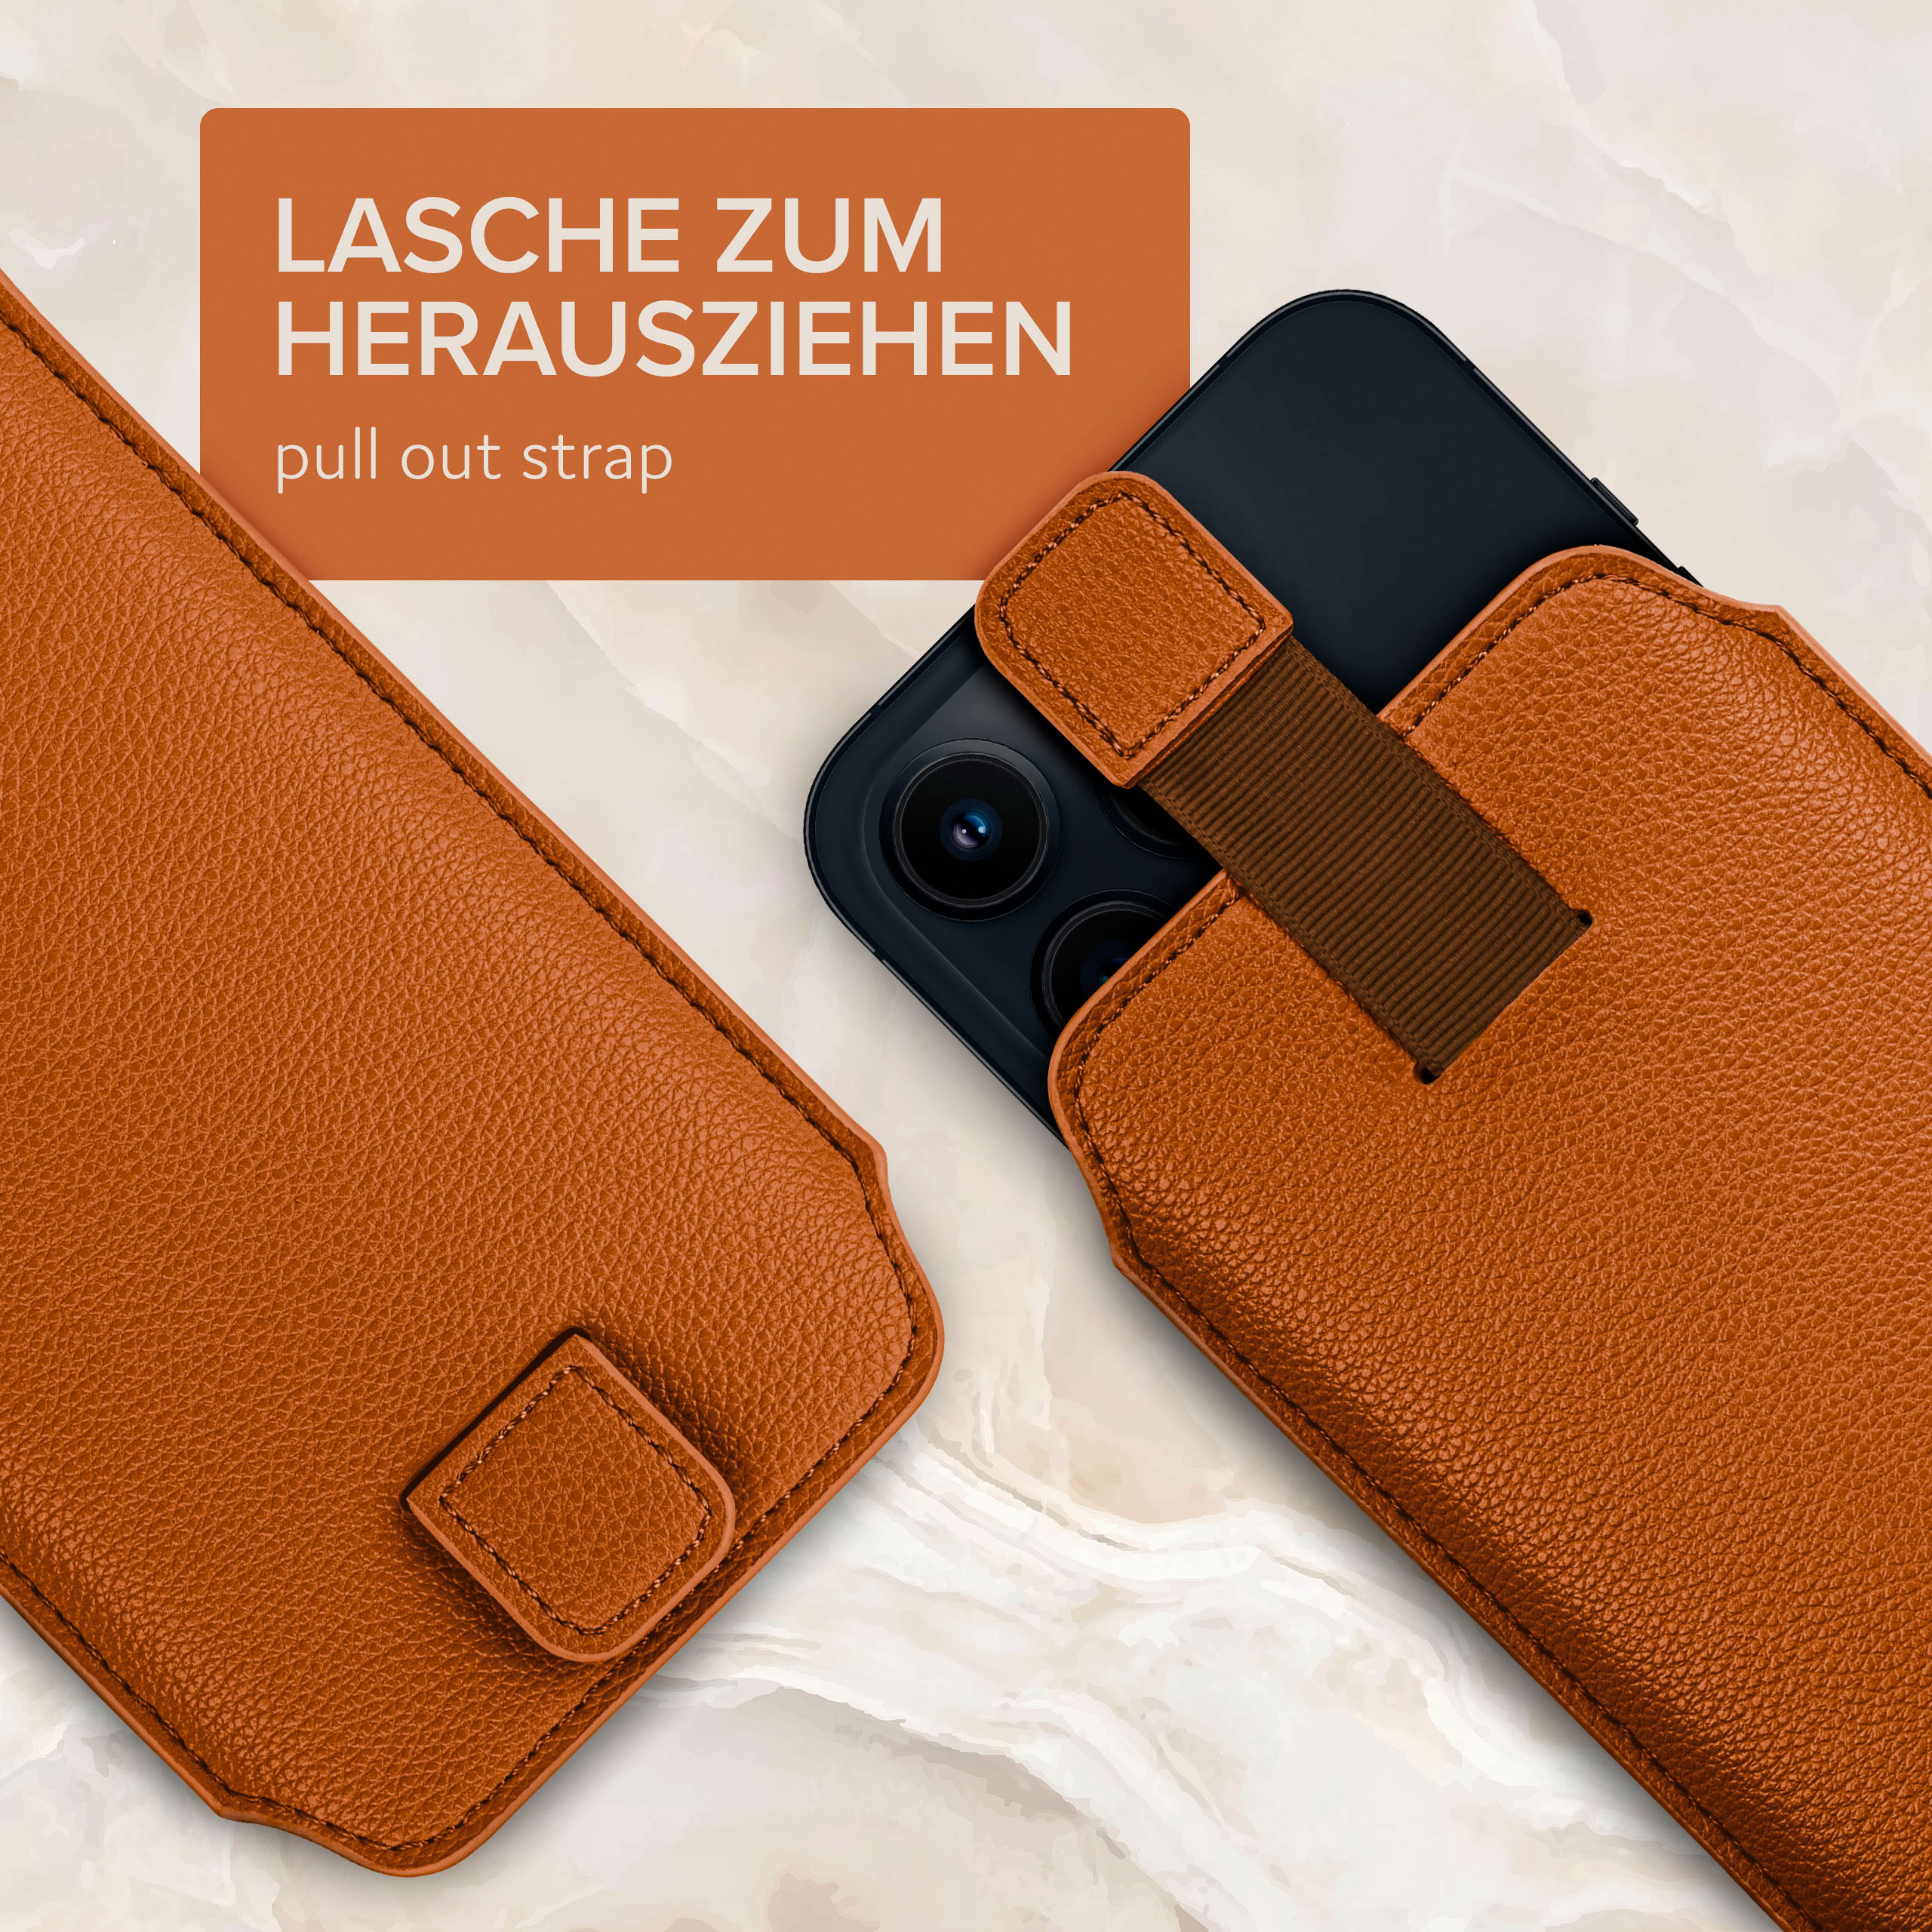 Lite Lite/P30 mit Huawei, Cover, P30 Full New, ONEFLOW Zuglasche, Sattelbraun Einsteckhülle